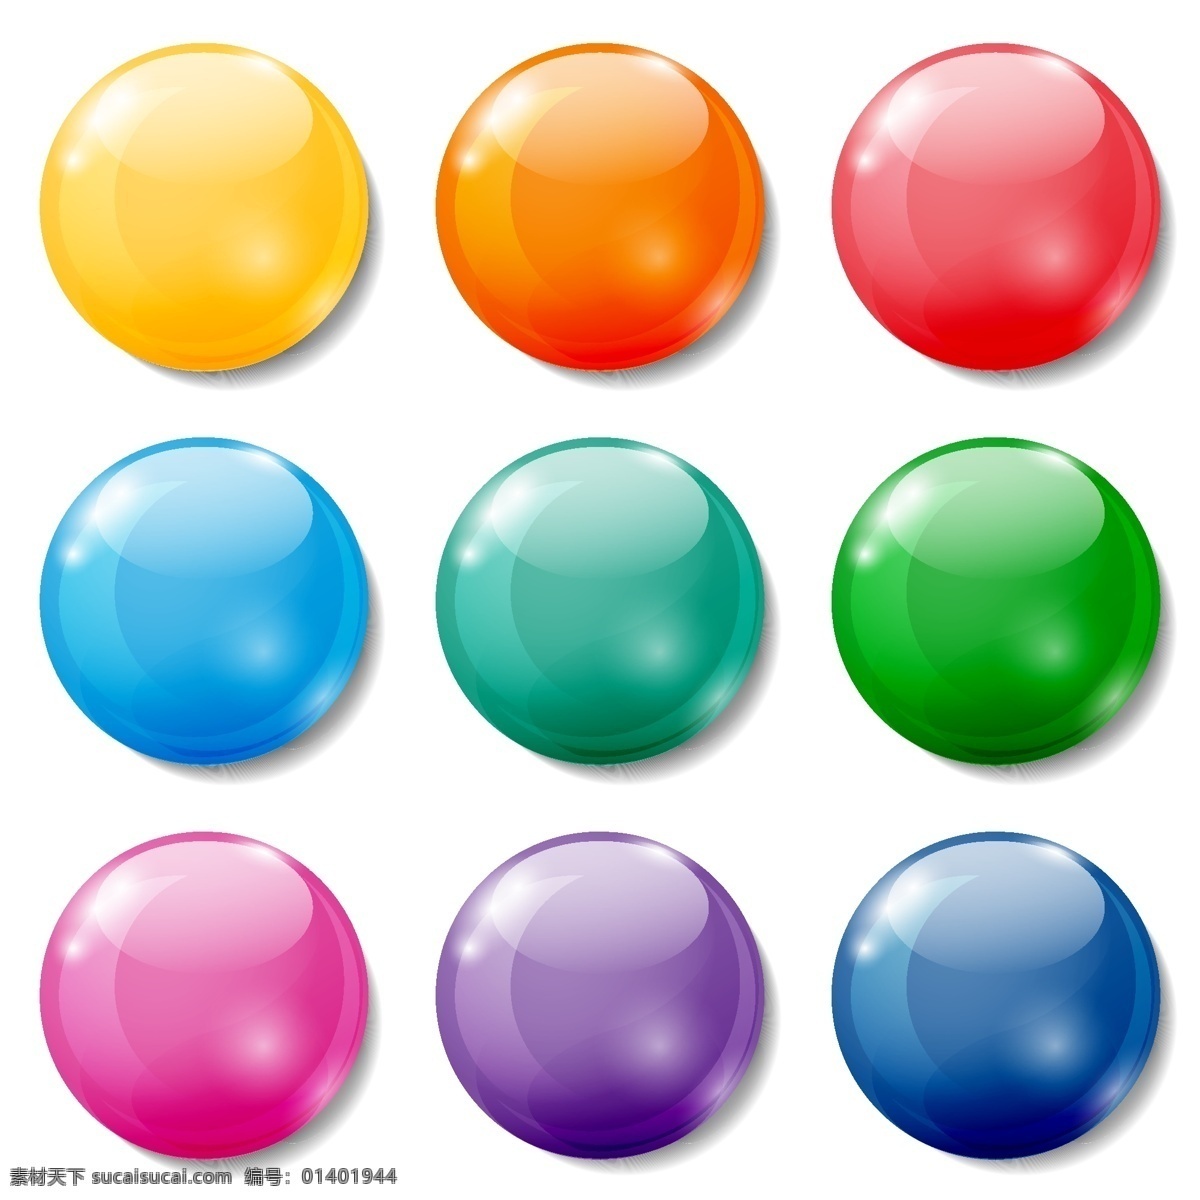 彩色 水晶球 按钮 图标 矢量 球体 时尚 eps格式 彩色水晶球 按钮图标 矢量图下载 彩球 标志图标 其他图标